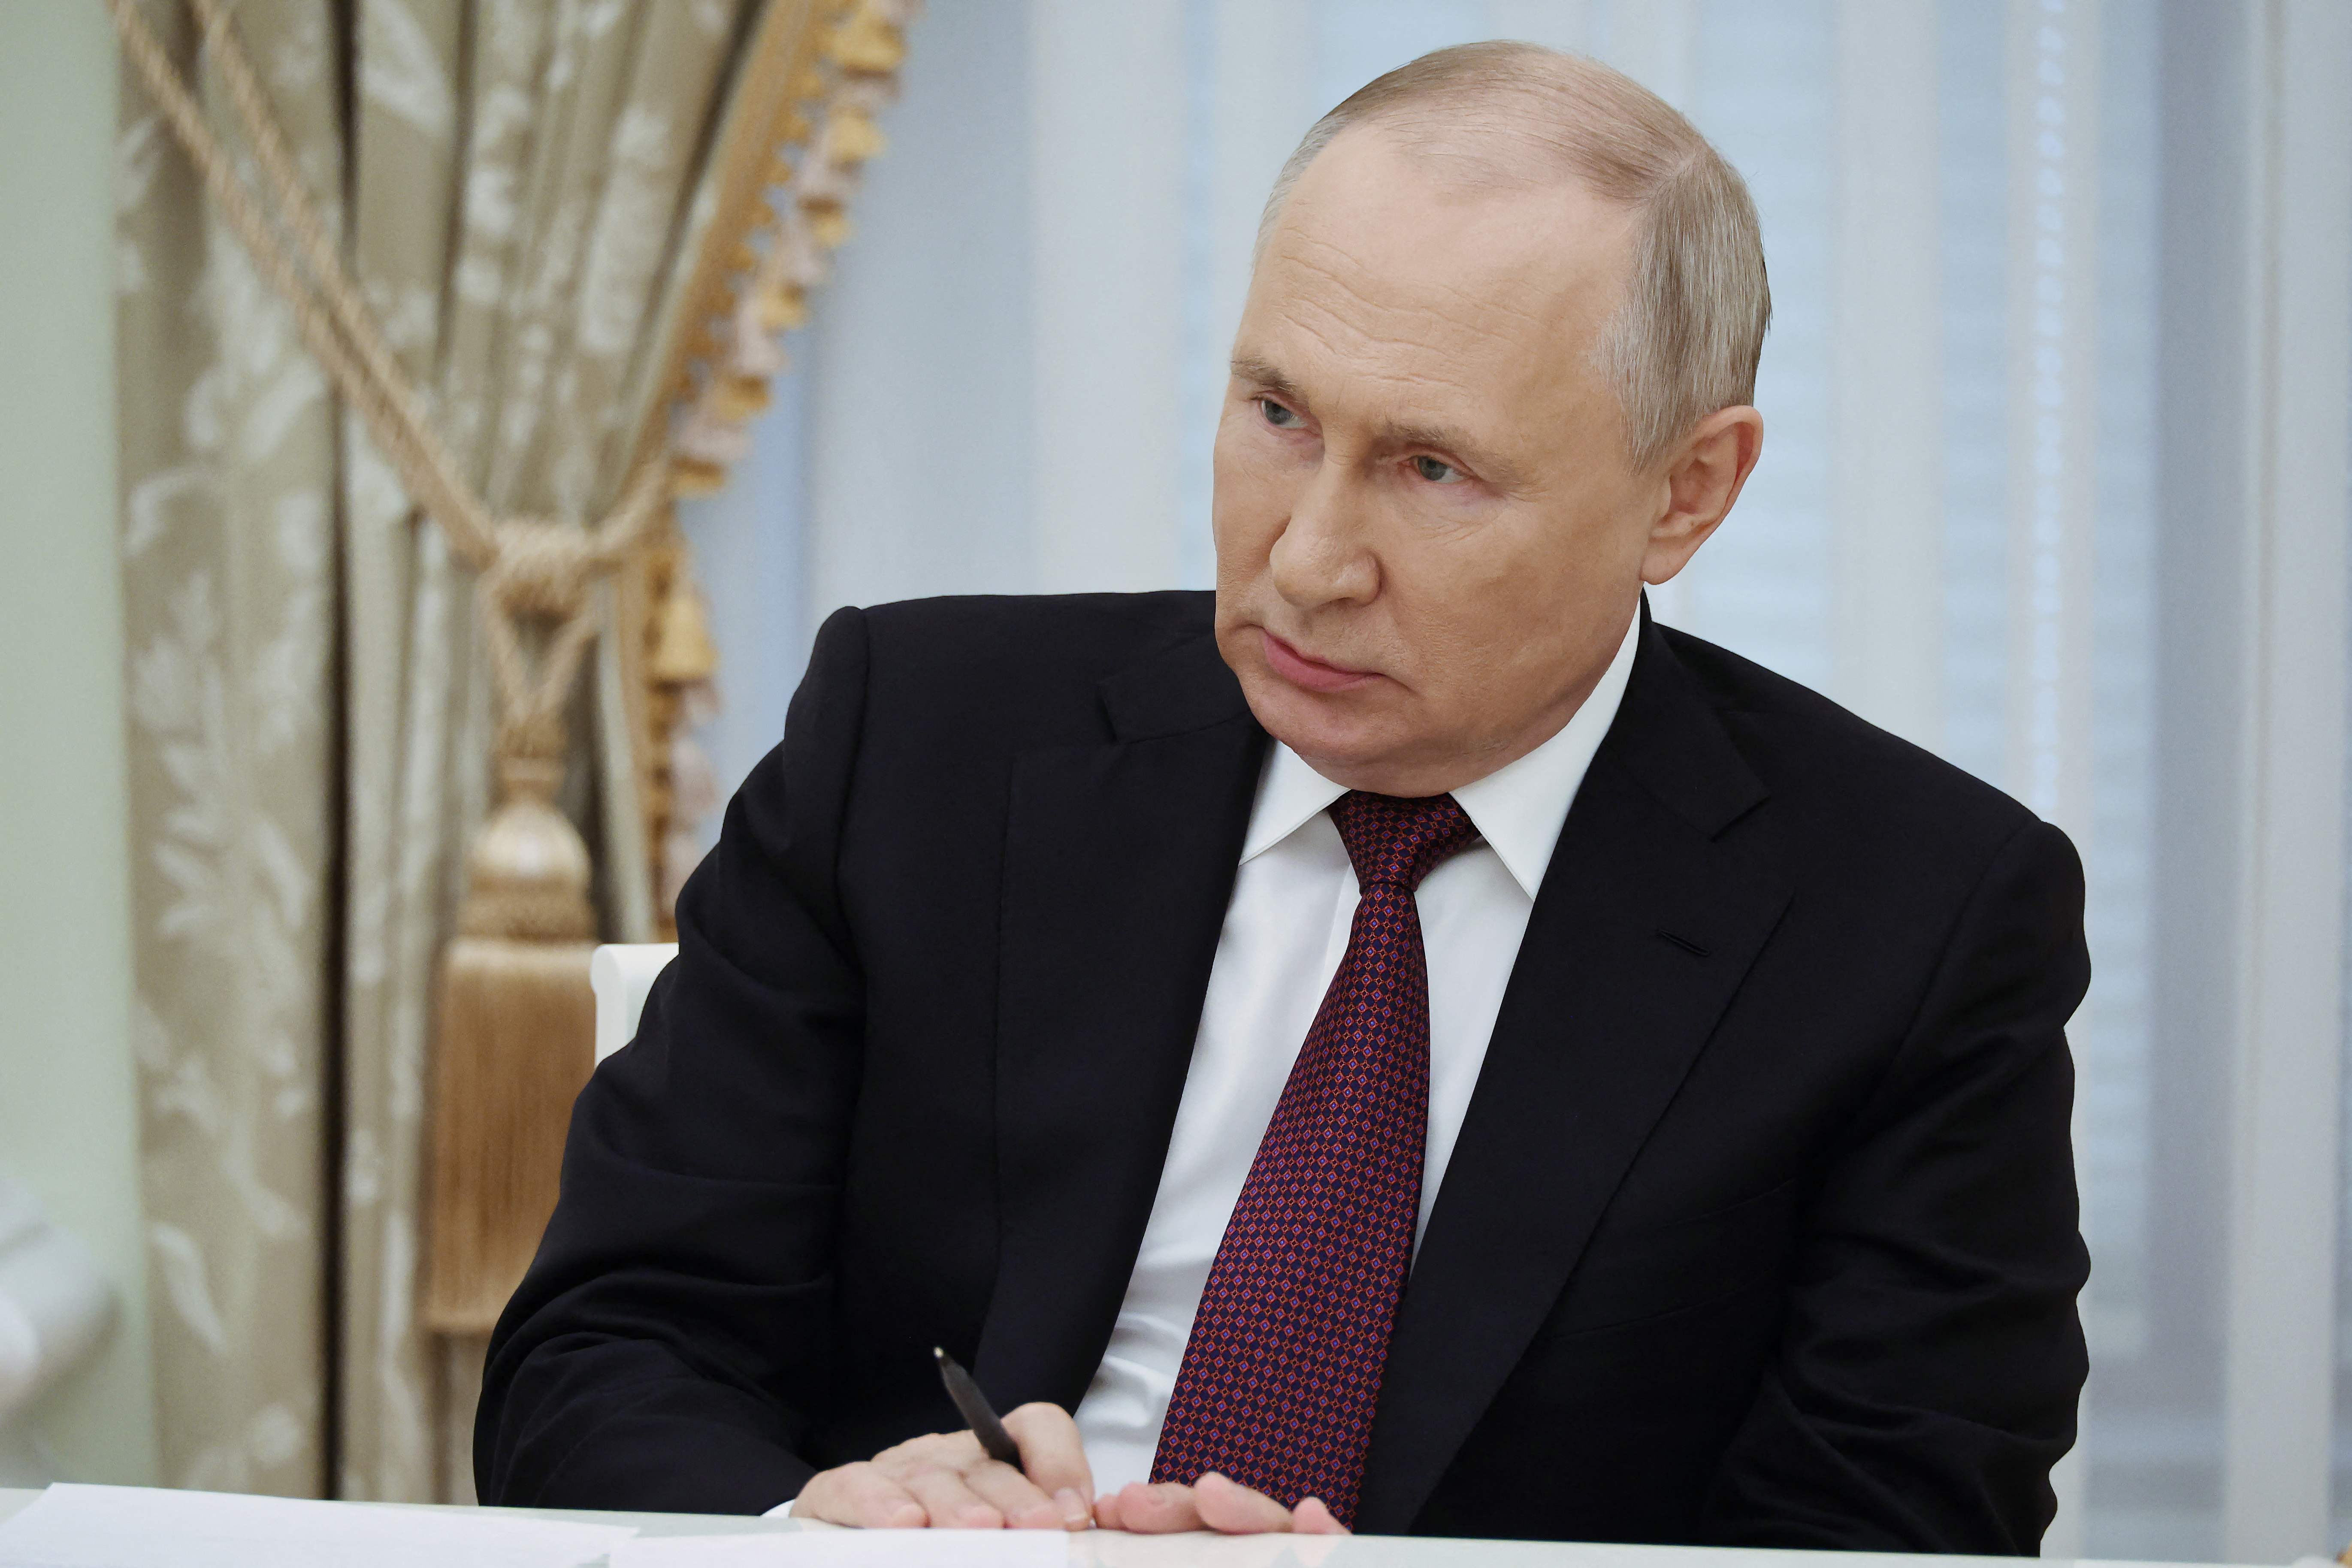 Vladimir Putin in the Kremlin on Thursday